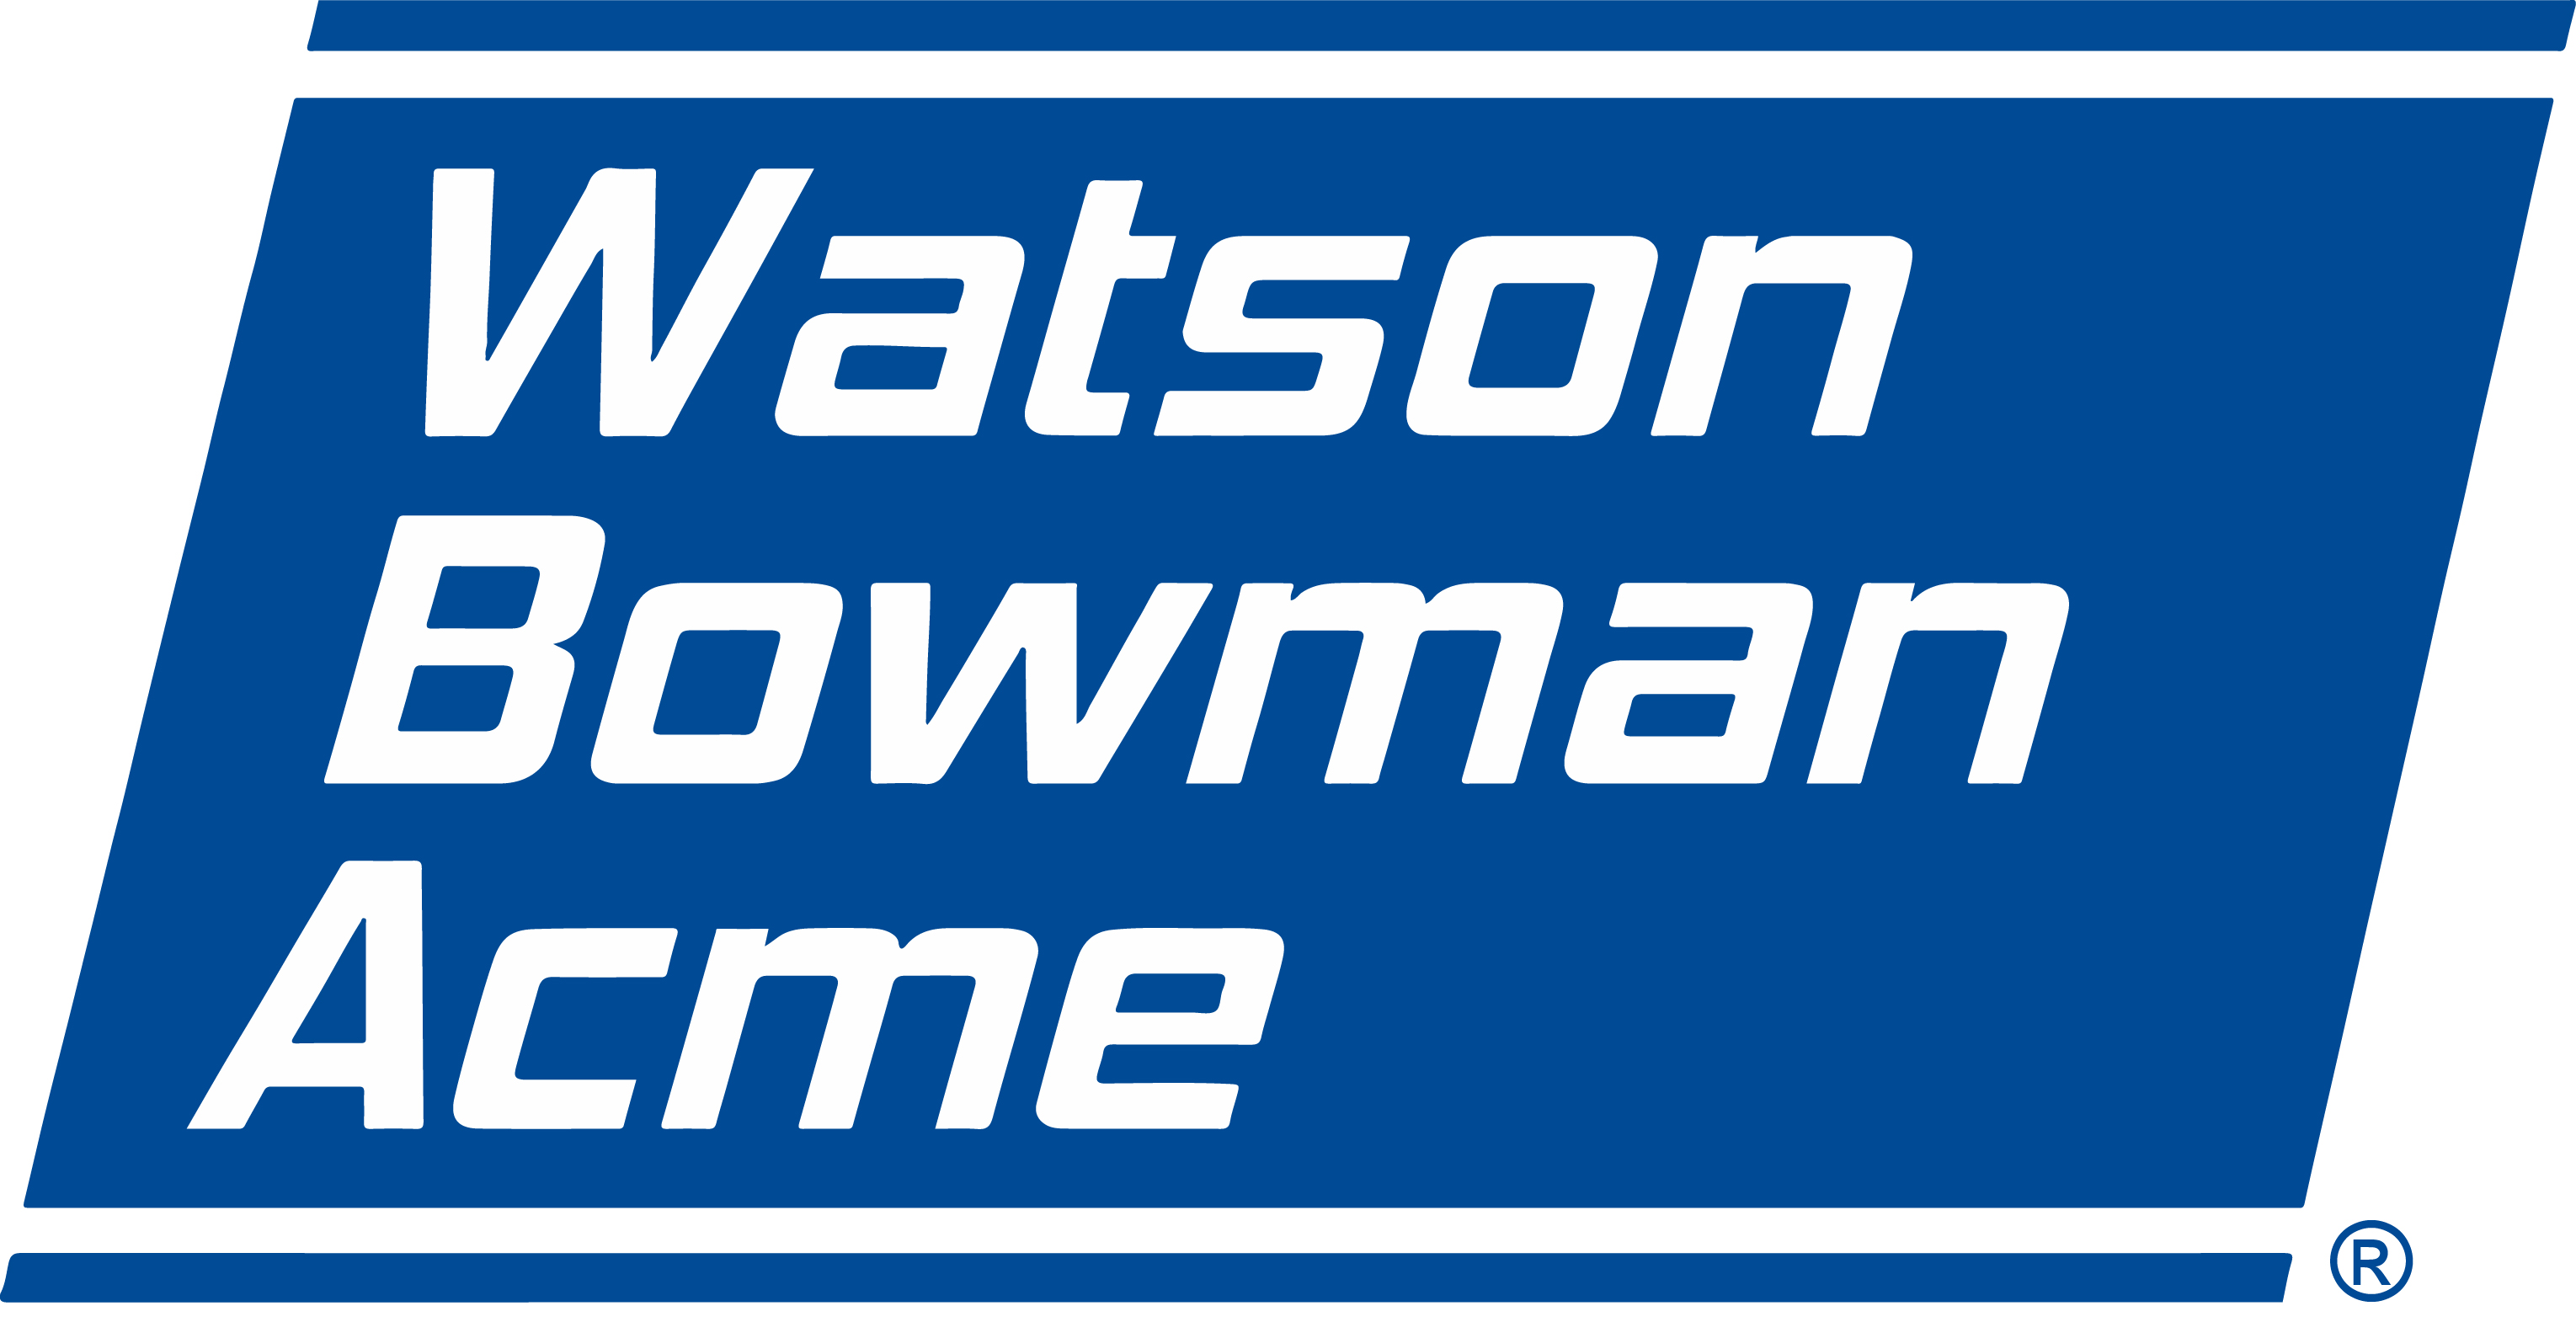 Watson Bowman